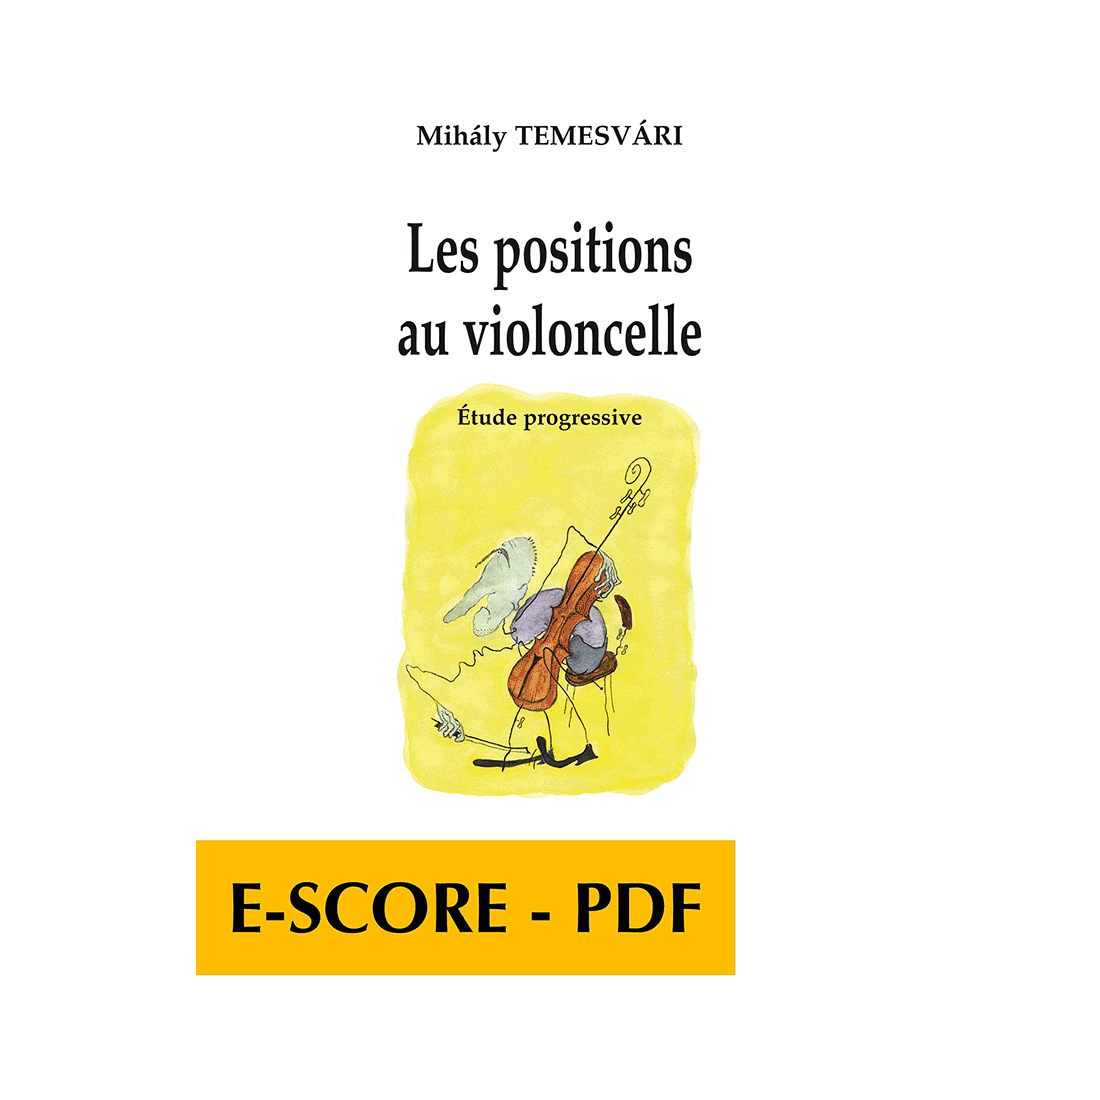 Les positions au violoncelle für Violoncello - E-score PDF